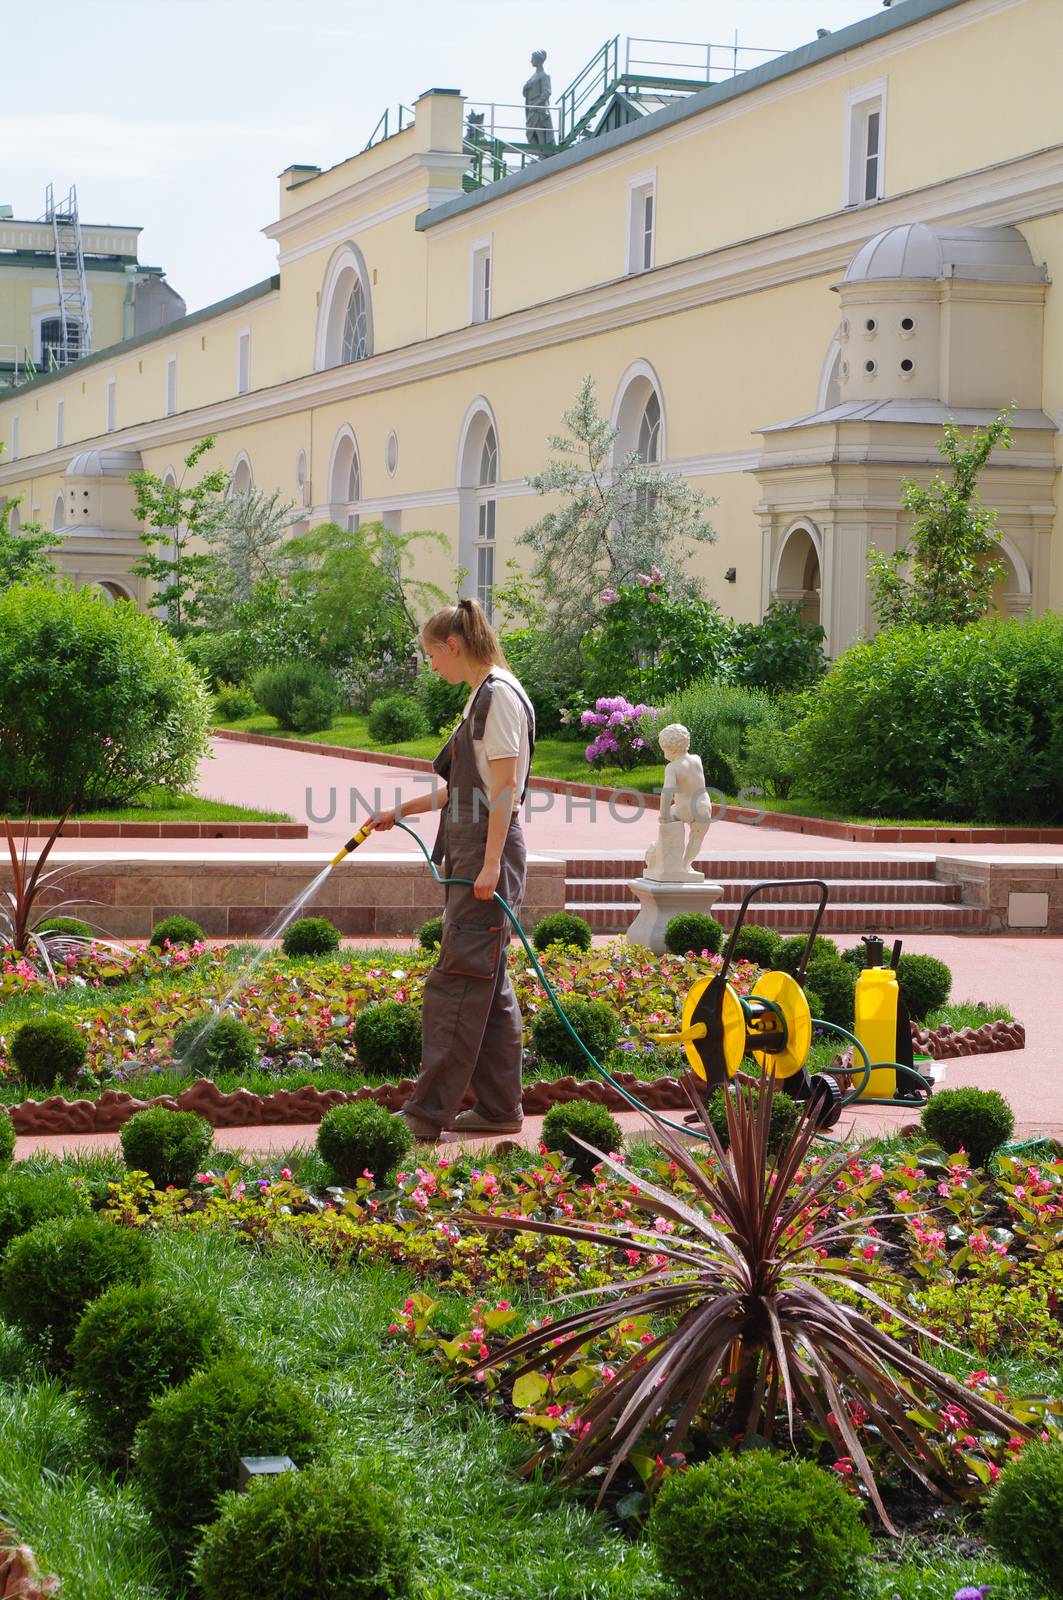 SAINT PETERSBURG, RUSSIA - JUNE 05, 205: a woman gardener watering flowers in the garden of Hermitage major art museum.